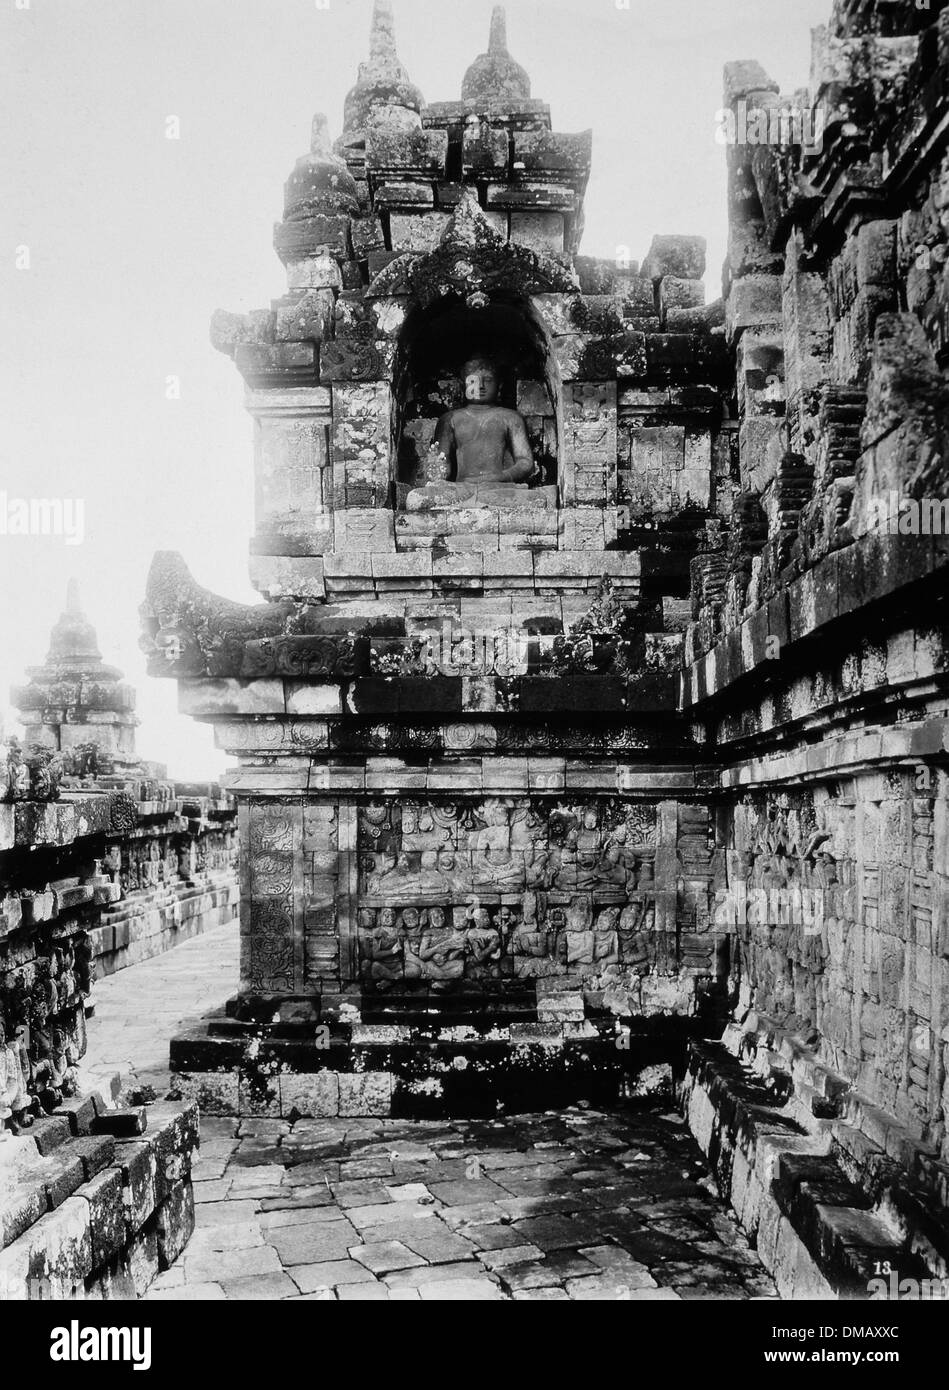 Statue de Bouddha sur la première plate-forme, Temple de Borobudur, à Java, en Indonésie, vers 1900 Banque D'Images